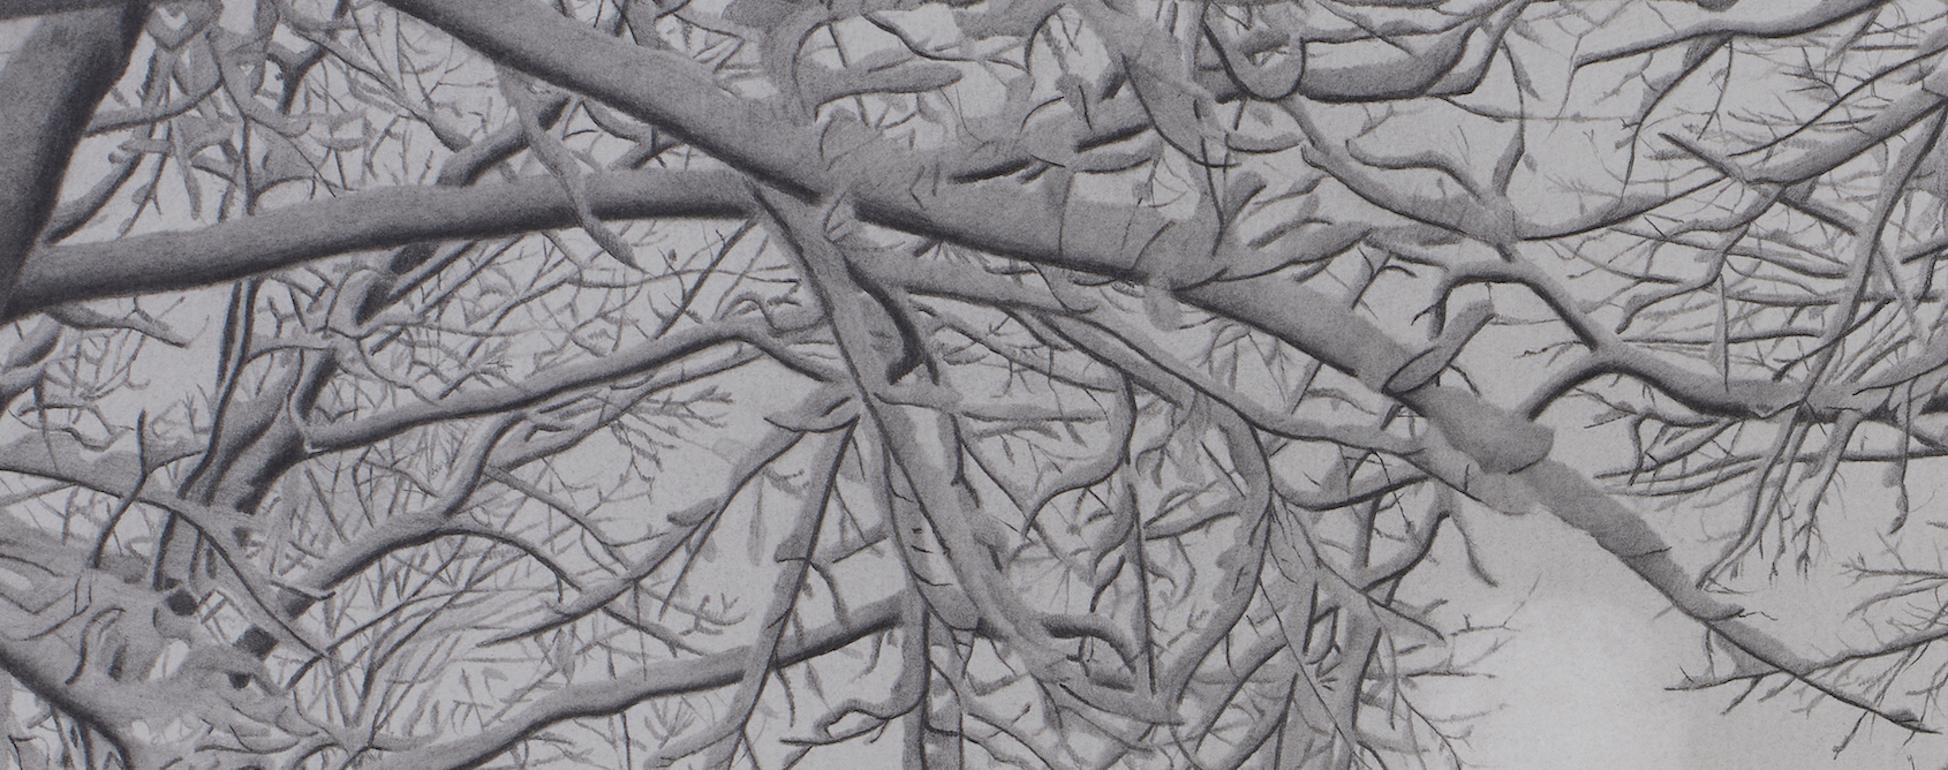 Wintry Trees 3, fotorealistische Graphit-Landschaftszeichnung, 2021 (Fotorealismus), Art, von Mary Reilly